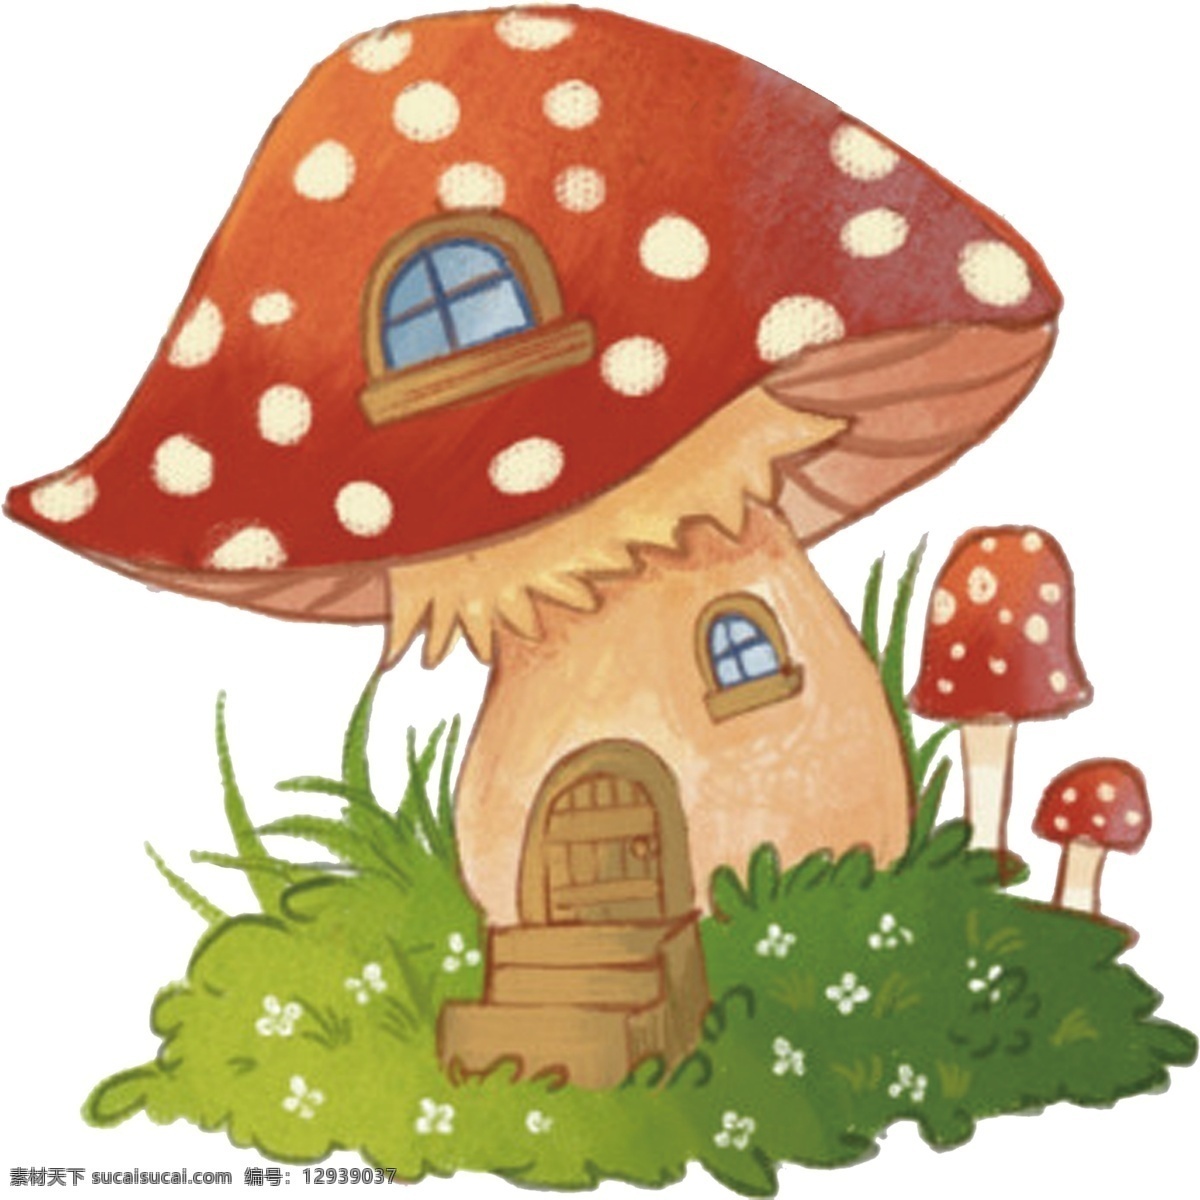 卡通蘑菇图片 蘑菇 卡通 伞 香菇 菌类 大小 插画 动漫动画